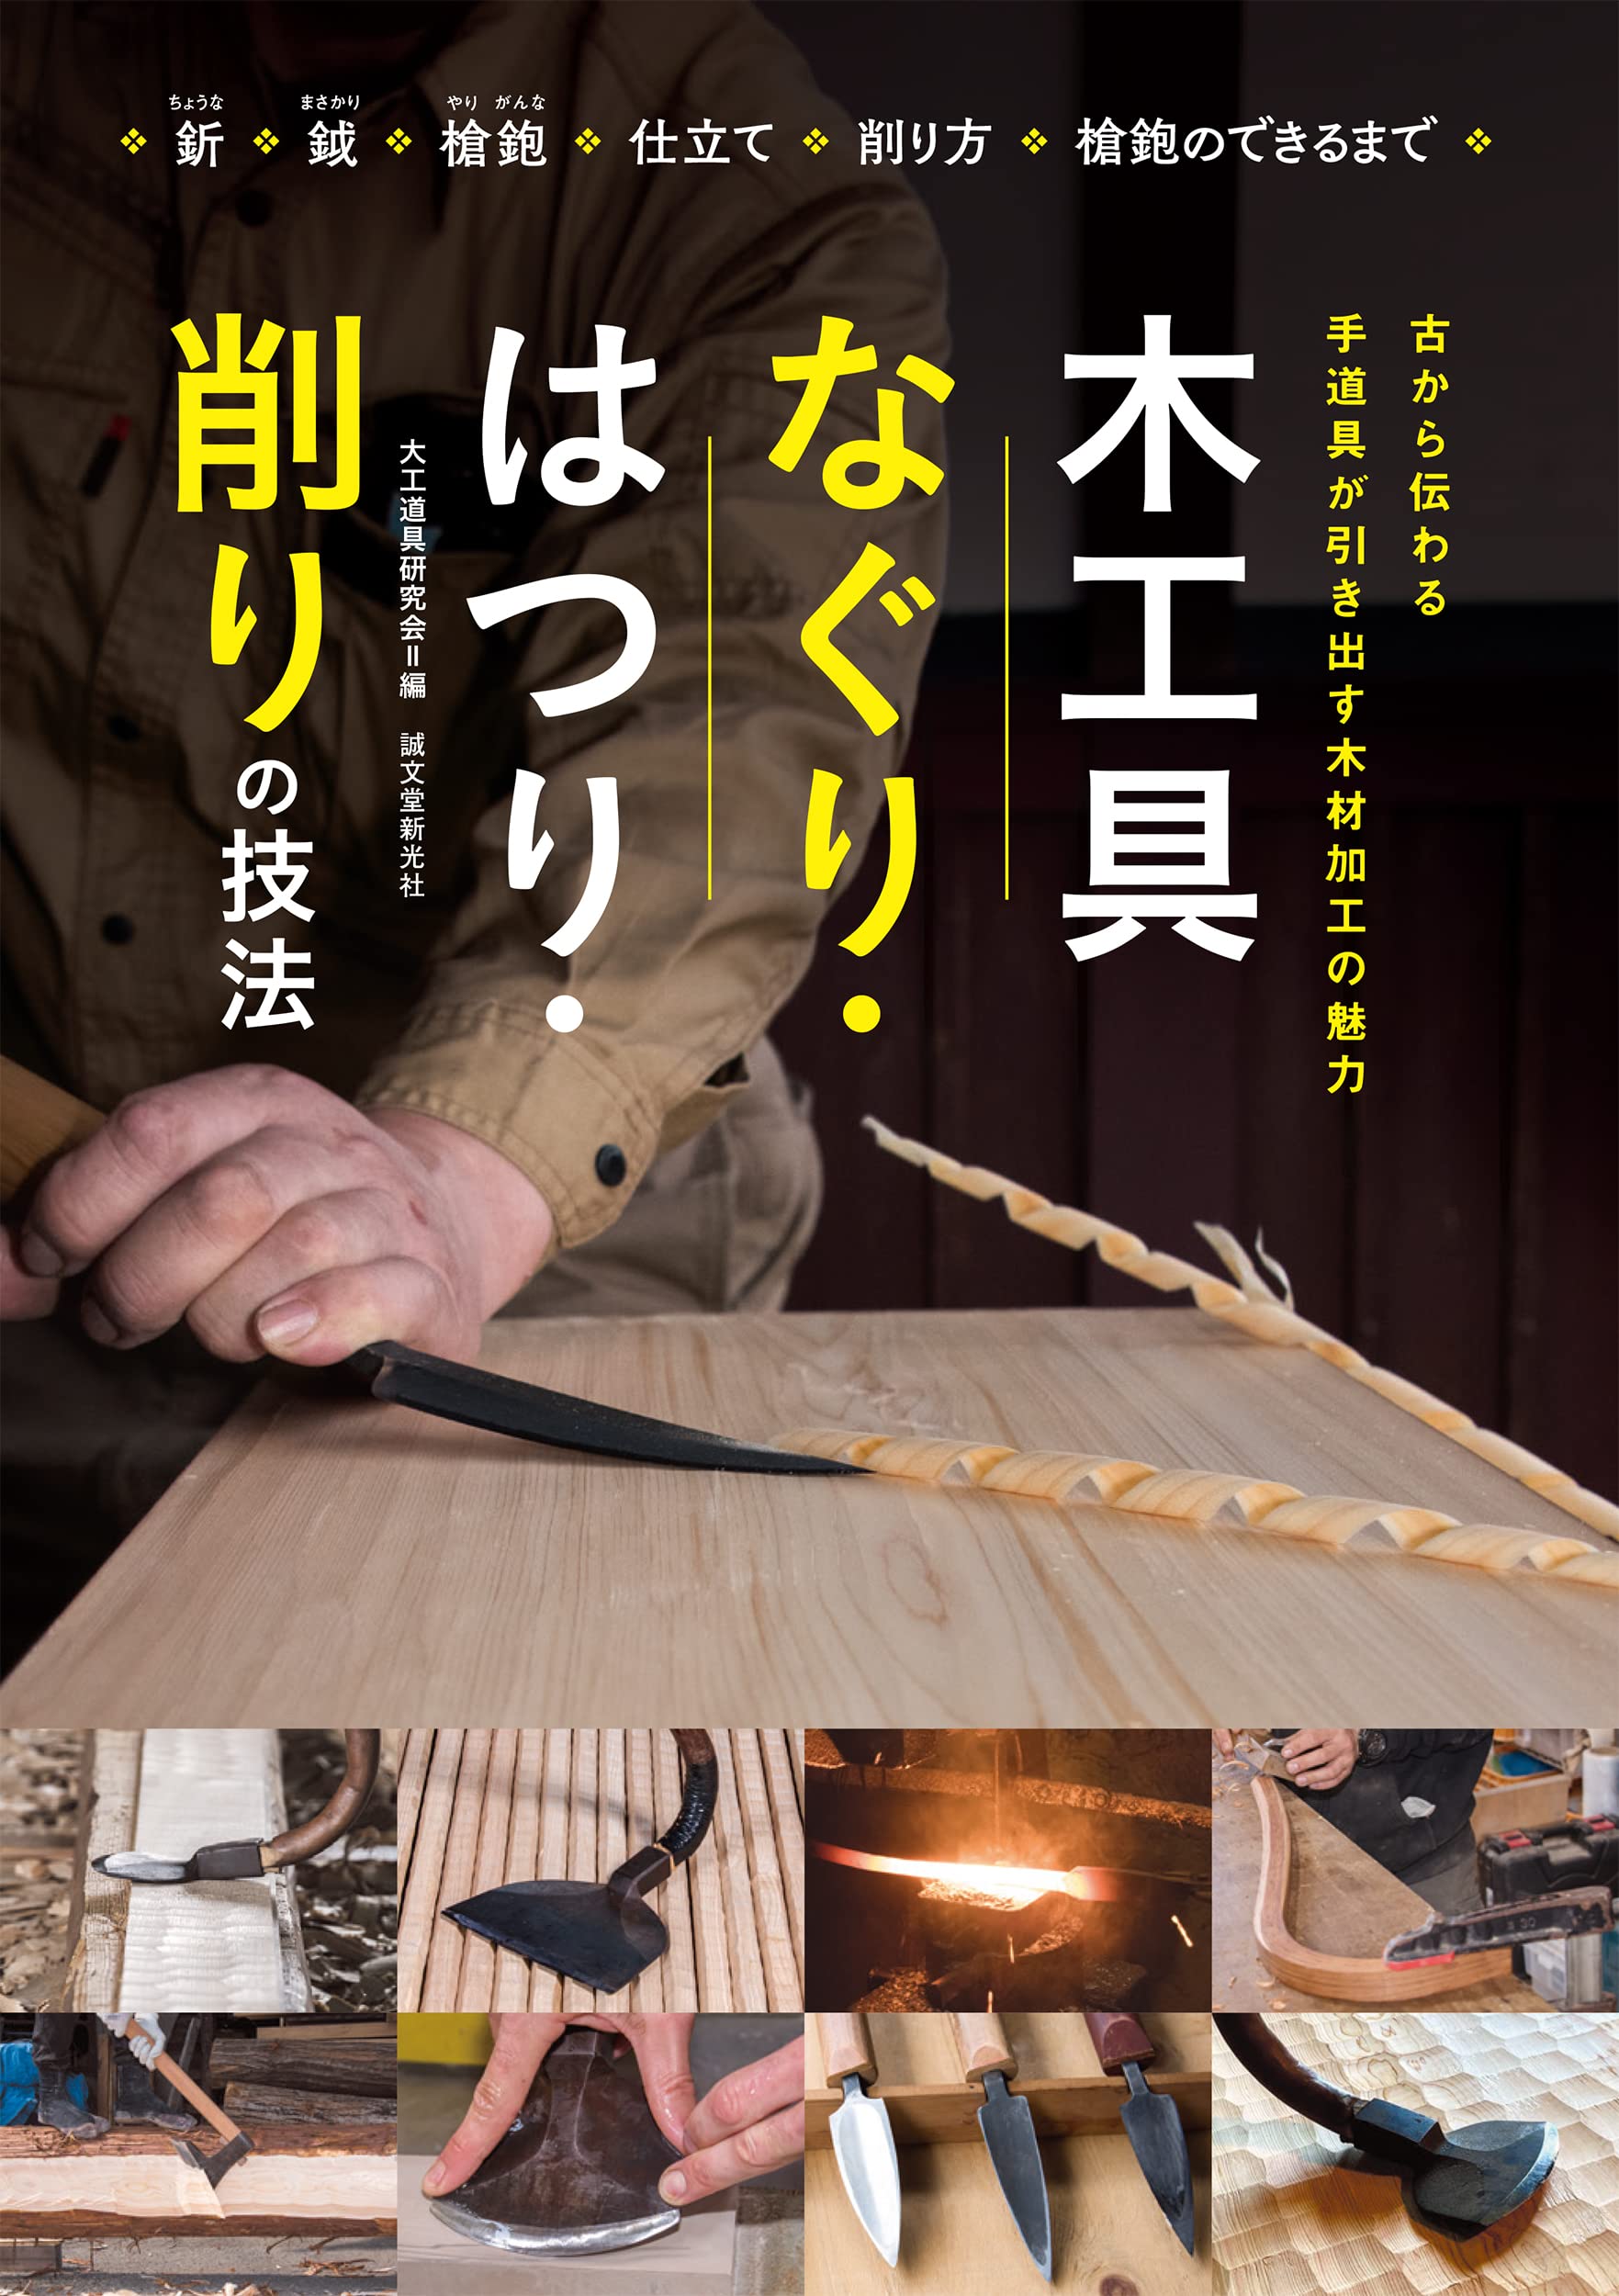 木工具 なぐり·はつり·削りの技法: 古から傳わる 手道具が引き出す木材加工の魅力